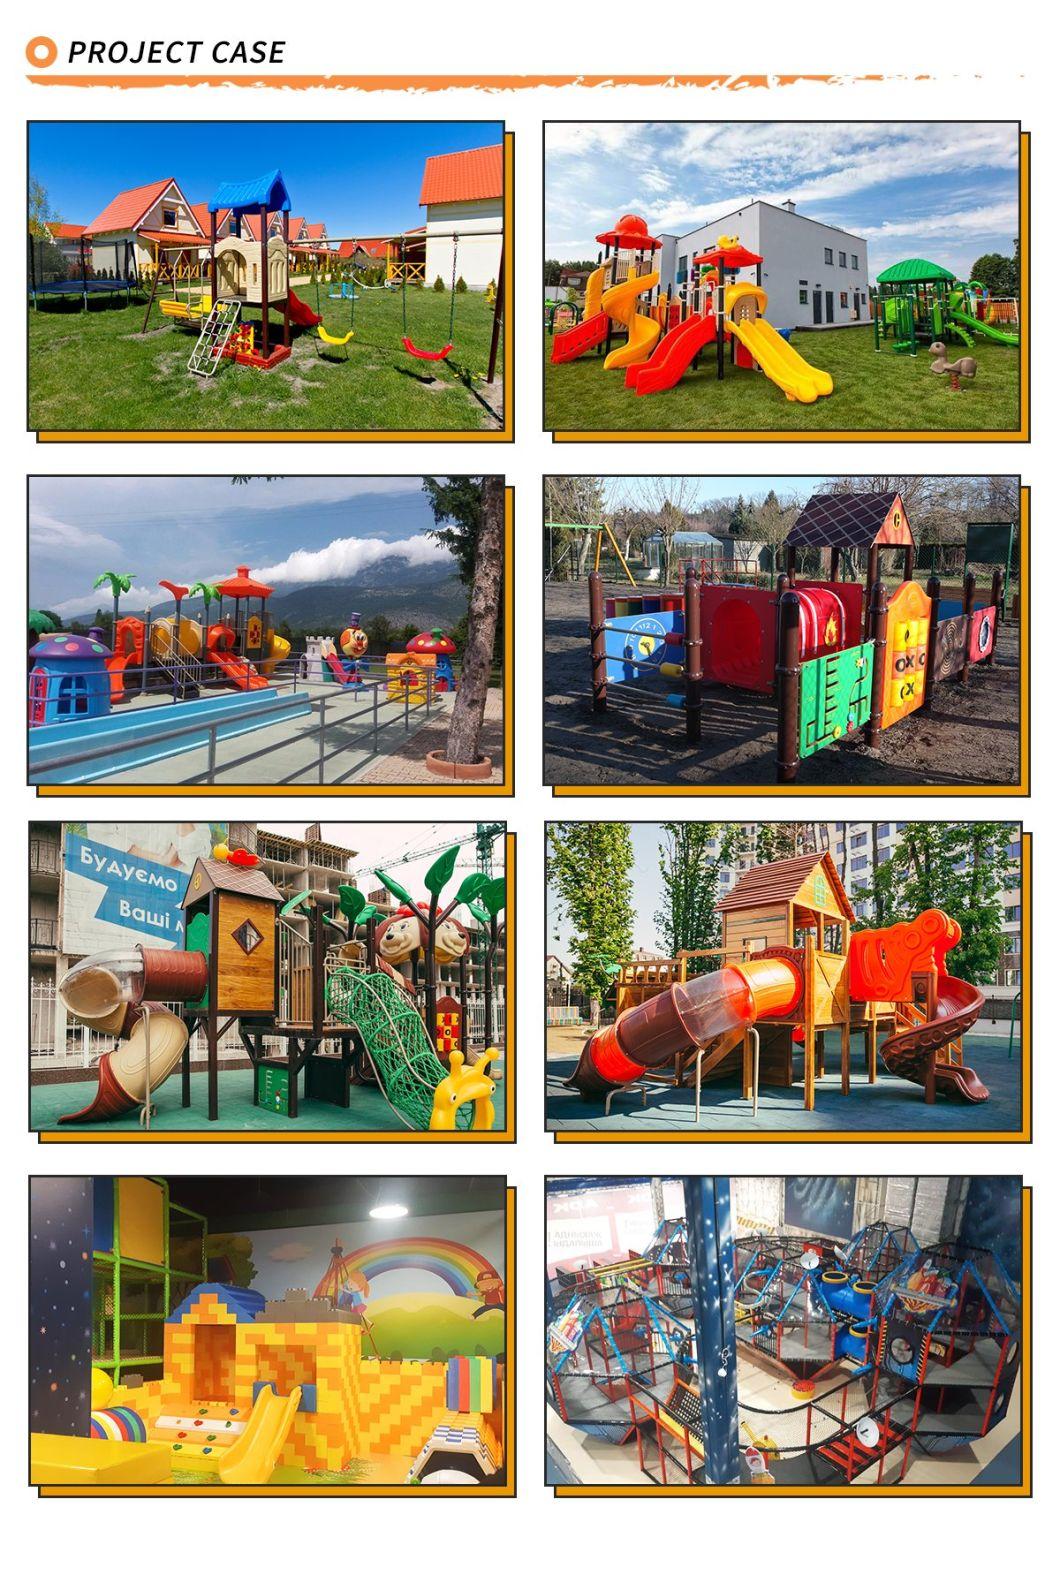 Chinoiserie Series Outdoor Amusement Equipment Playground Slide